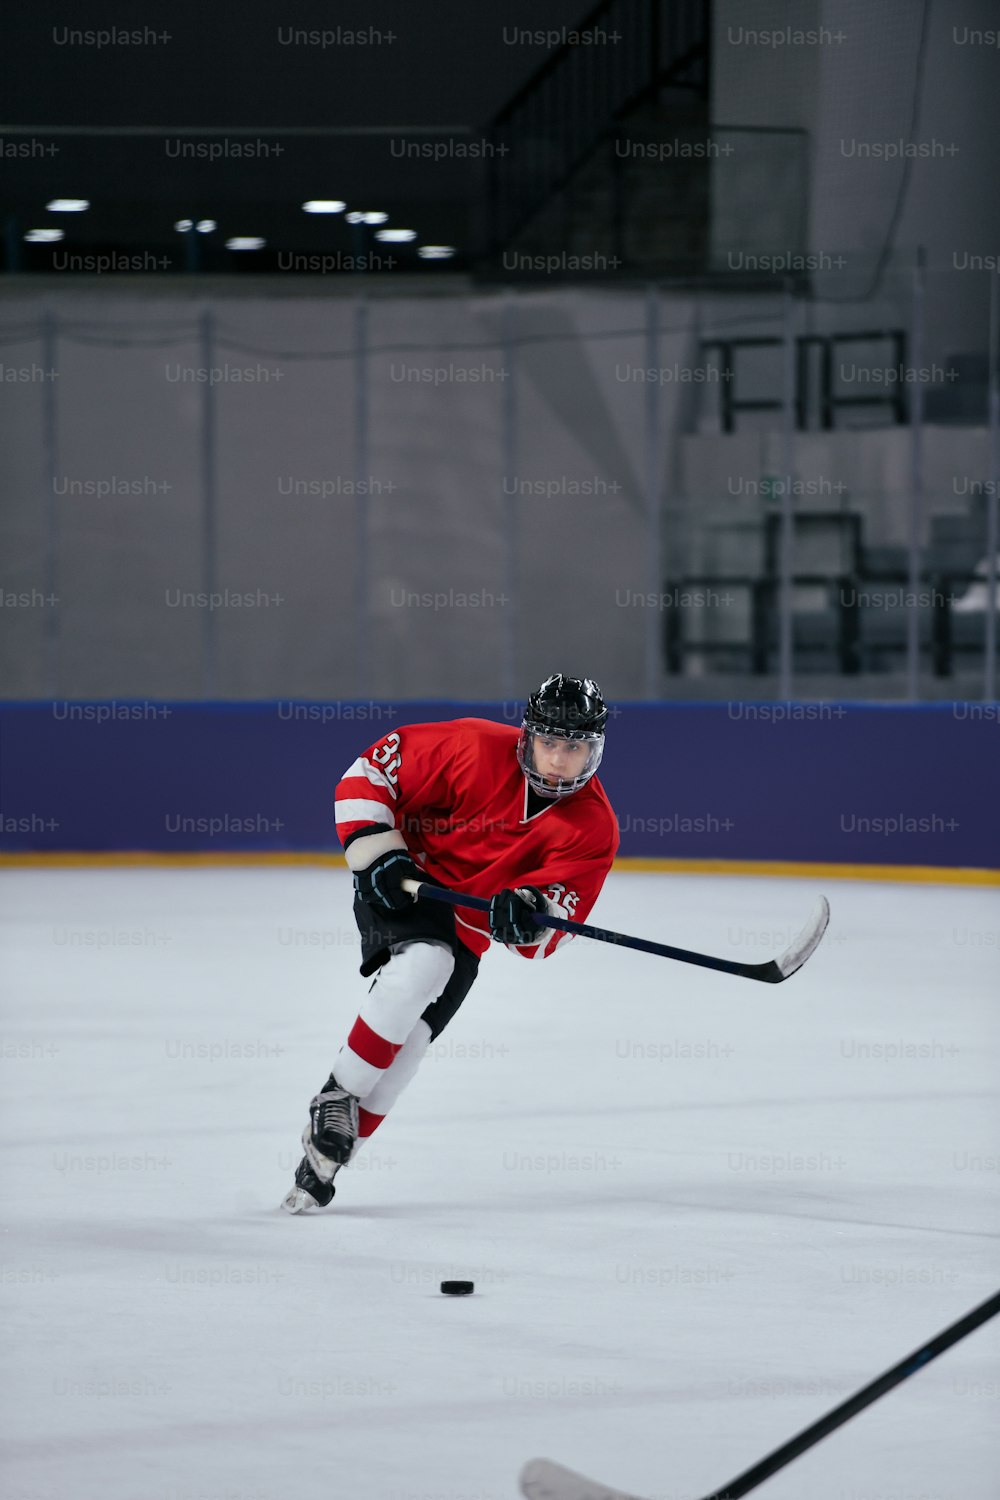 Un hombre con una camiseta roja está jugando al hockey